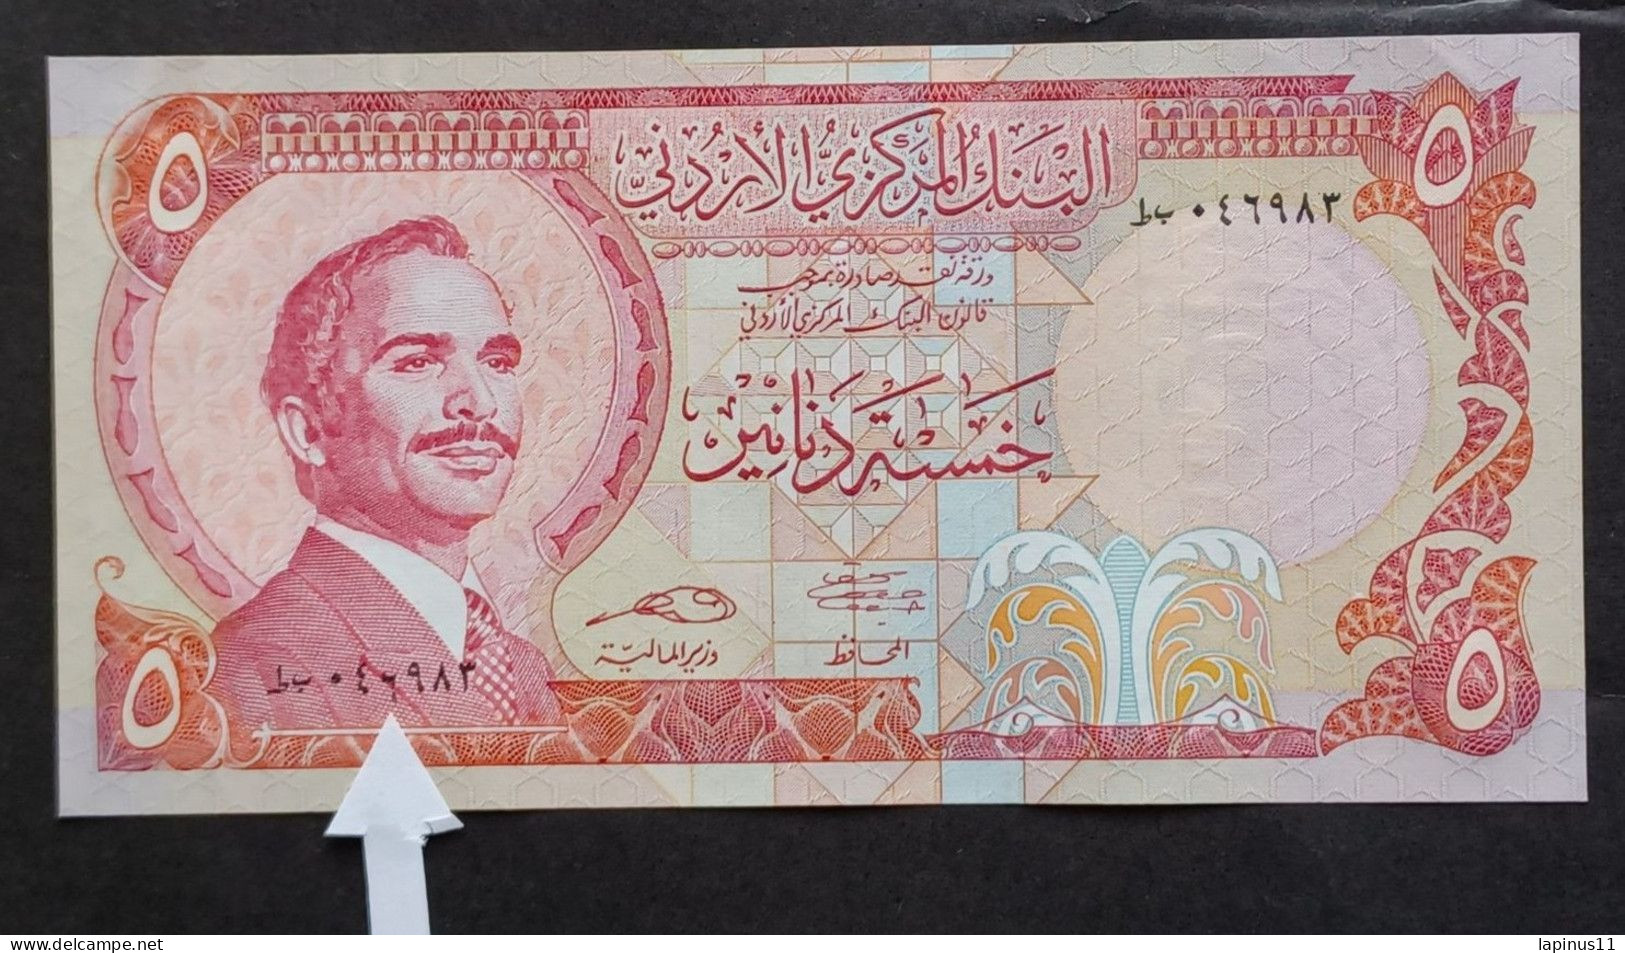 BANKNOTE الأردن JORDAN GIORDANIA 5 DINARS KING HUSSEIN 1975 ERROR PRINT NUMBER 6 LOW UNC 8 PIECES SYRIAL NUMBER - Jordanien